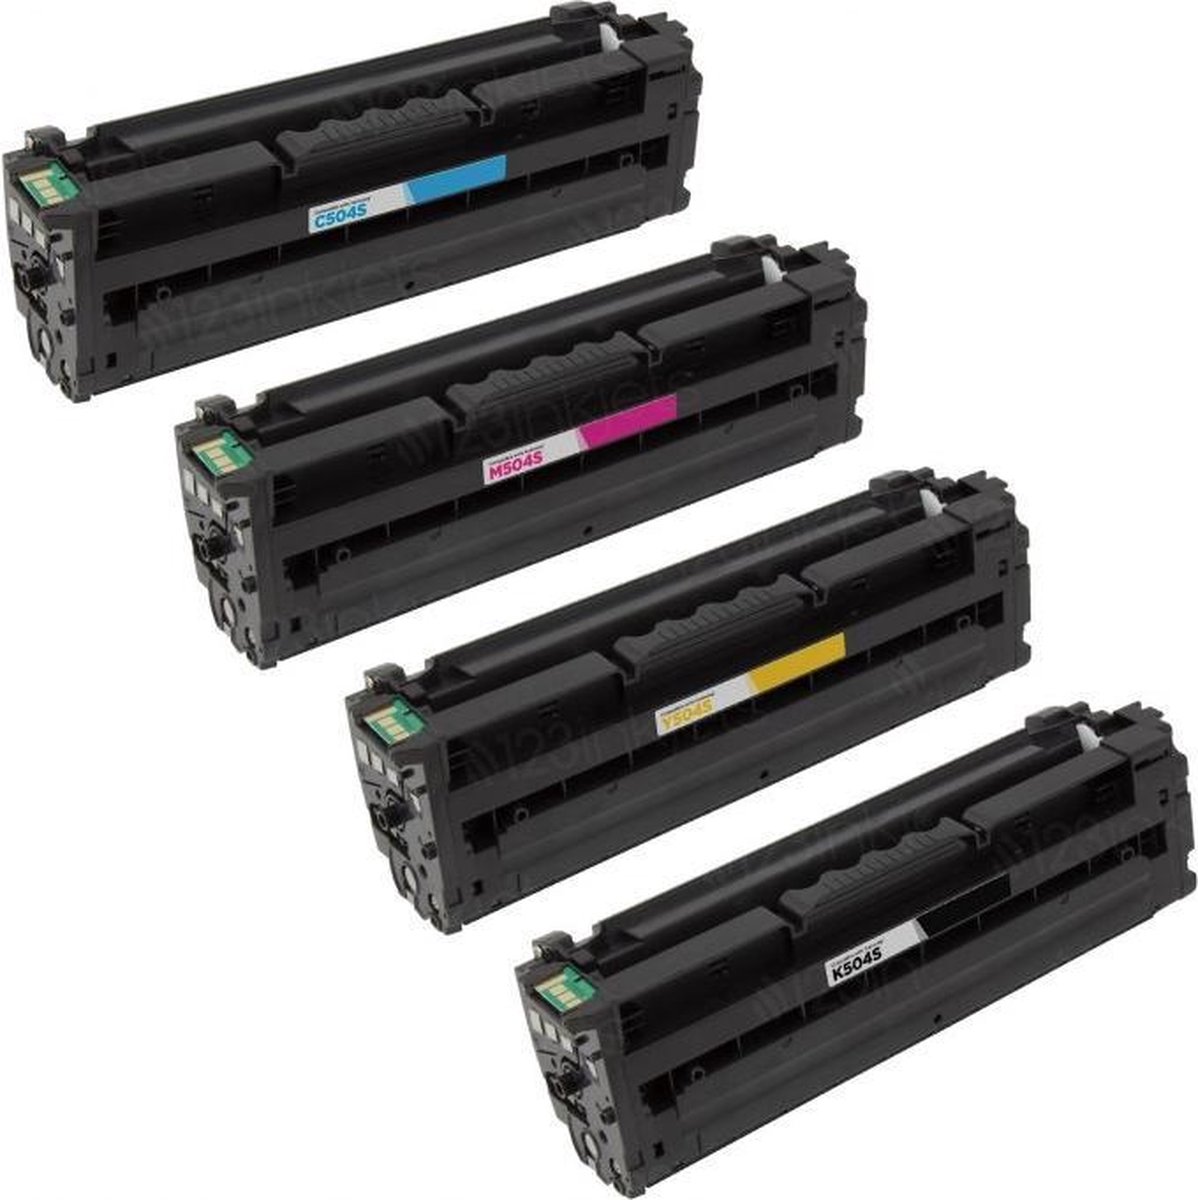 Inkmaster huismerk premium XL Multipack Laser toner cartridges voor Samsung CLT-K504S, CLT-C504S, CLT-M504S en CLT-Y504S | Geschikt voor Samsung CLP 415, 415N, 415NW, 4195FN, 4195FW, Samsung Xpress SL C1810W en SL C1860FW